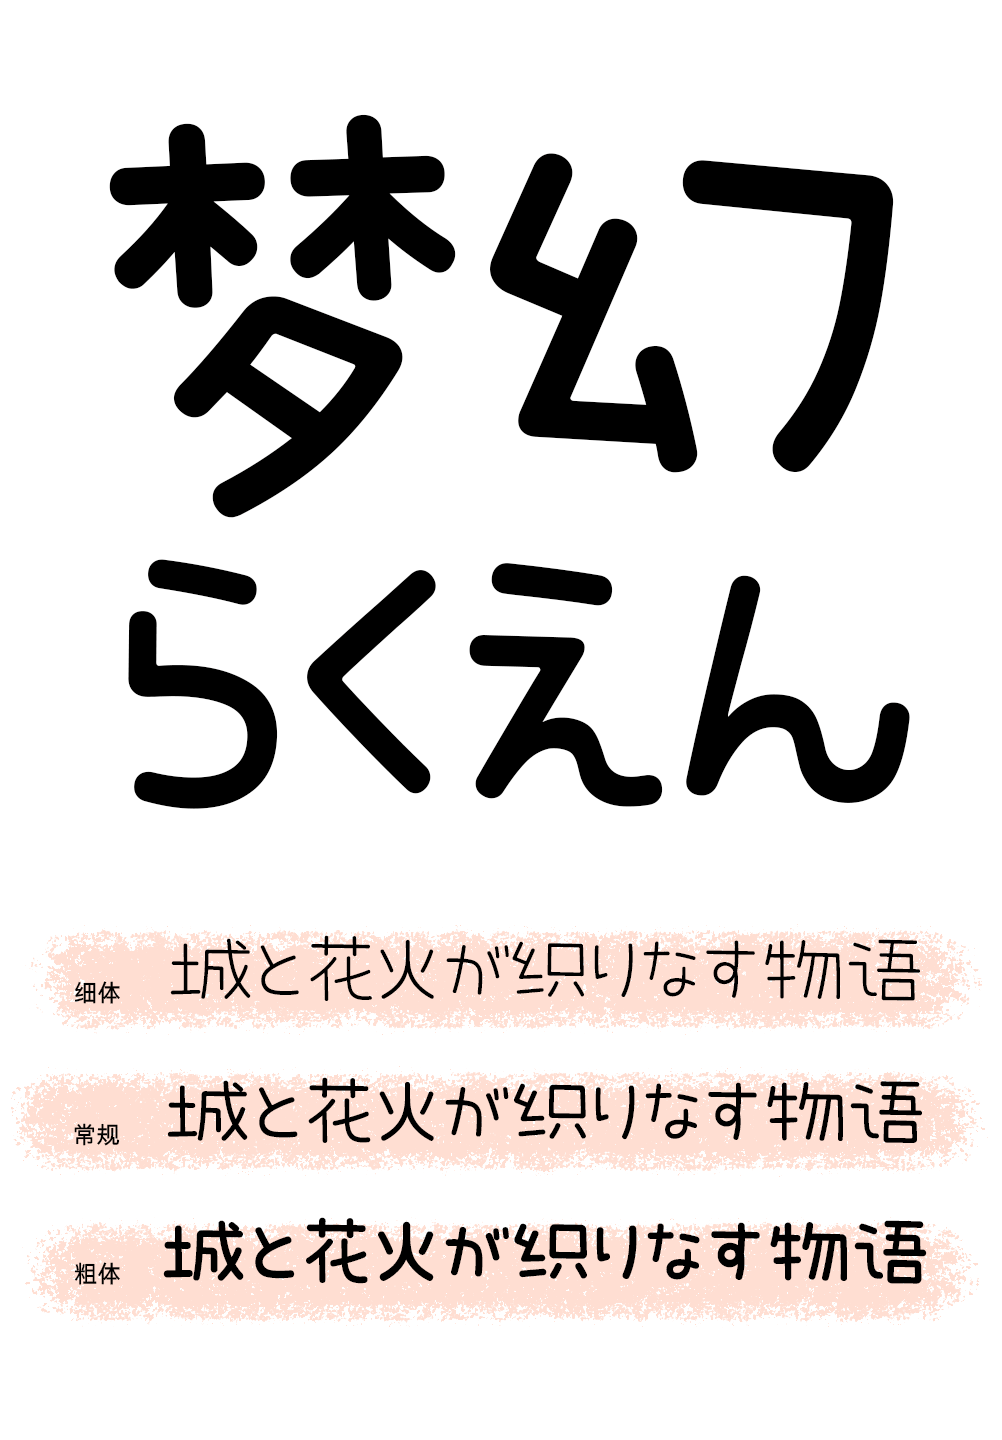 可爱清新的中日双语字体——GEETYPE晴空丸体、泡泡体